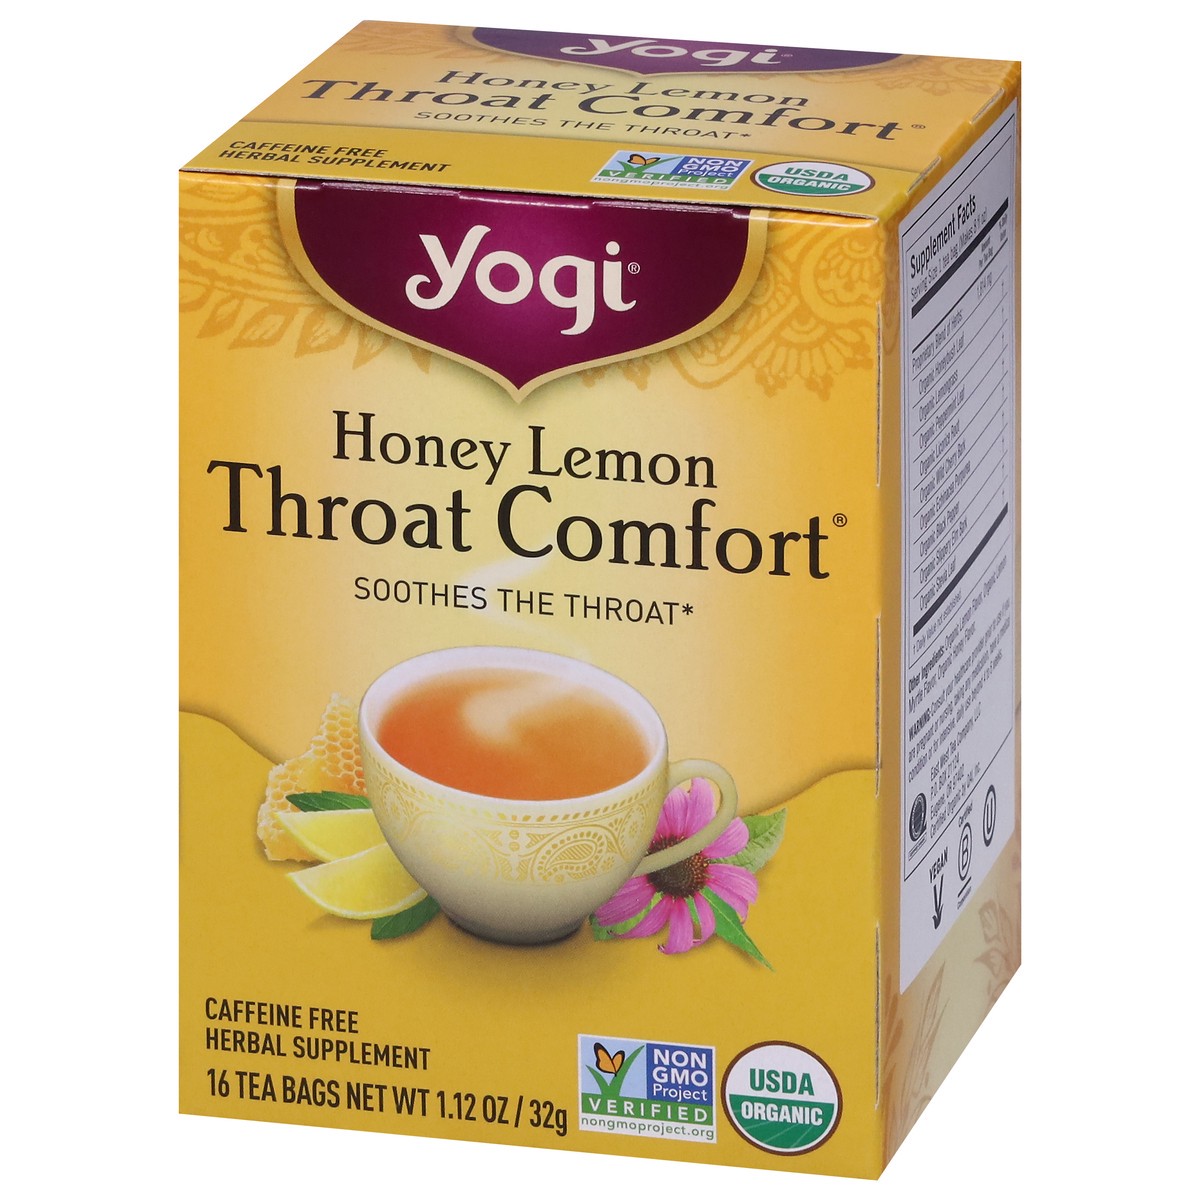 slide 7 of 9, Yogi Throat Comfort Honey Lemon Herbal Tea 16 Tea Bags, 16 ct